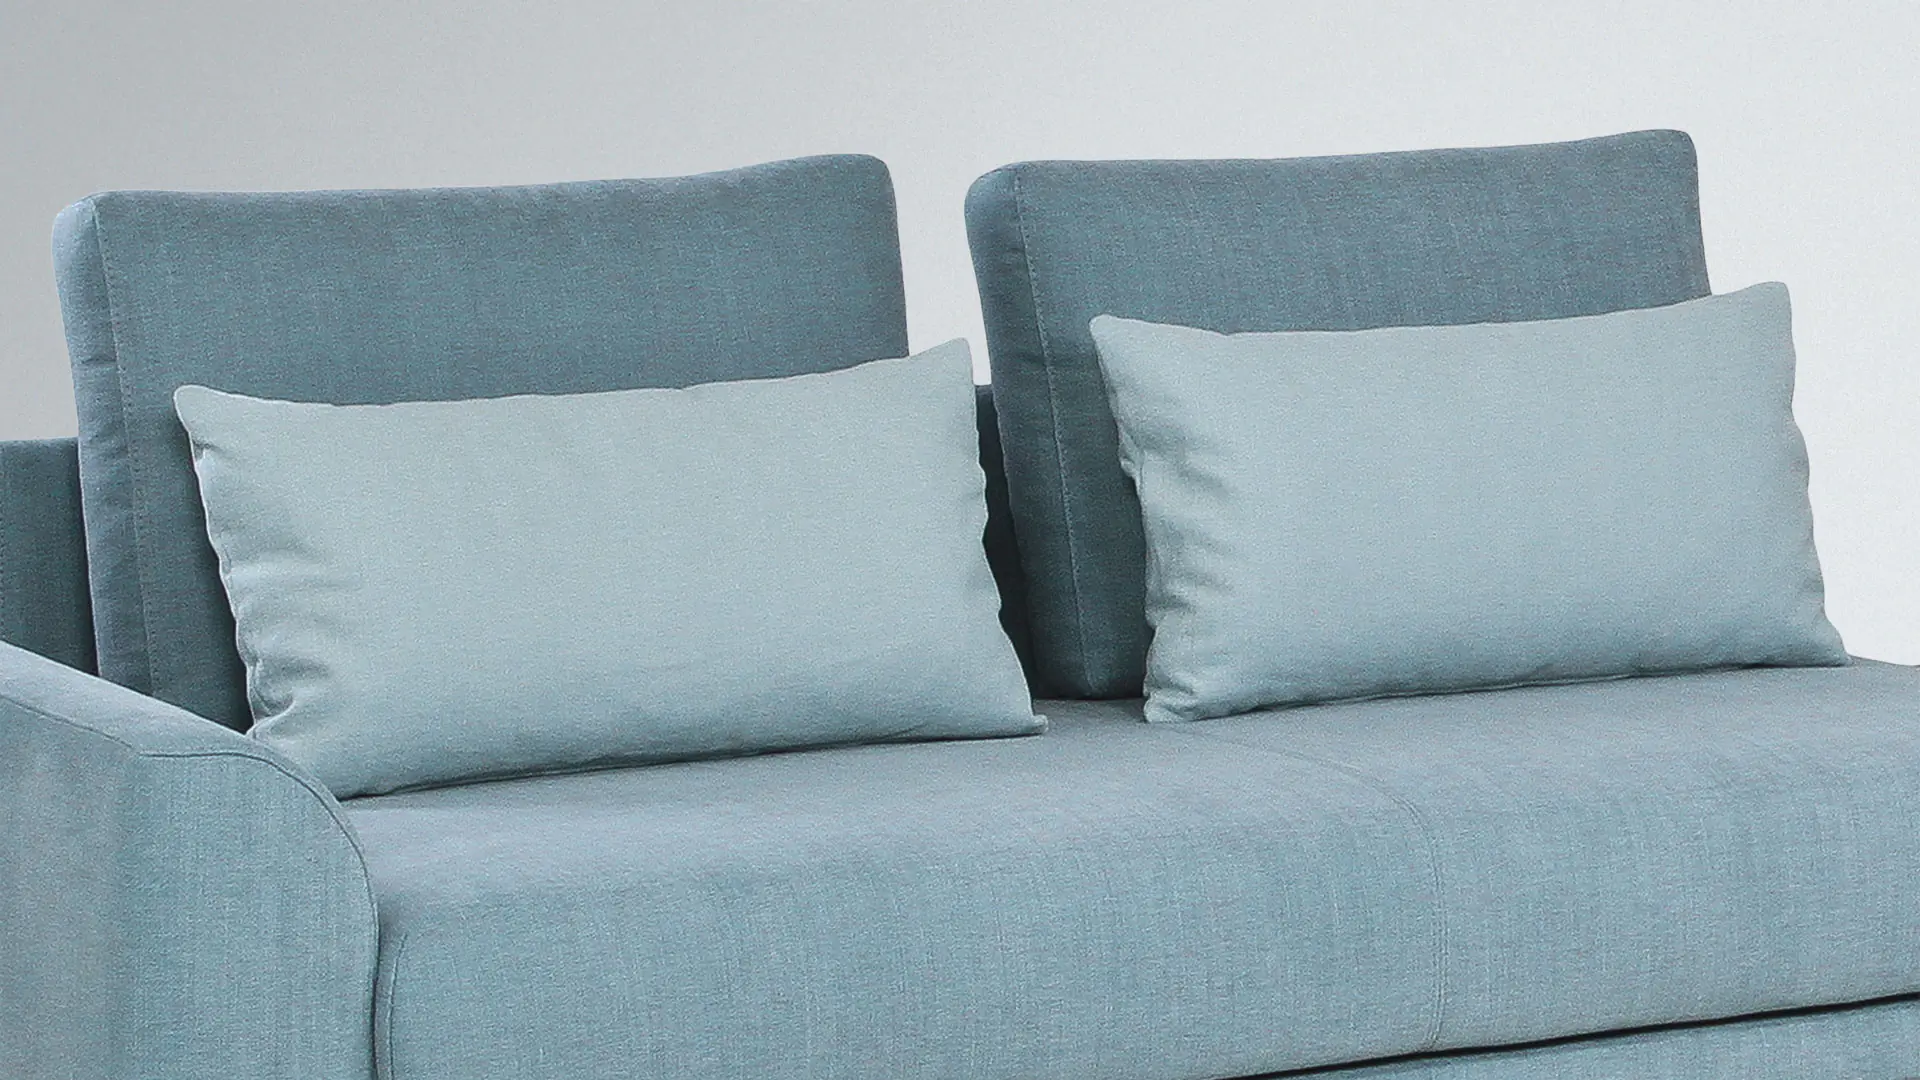 Des coussins de présentation moelleux rendent les canapés encore plus confortables